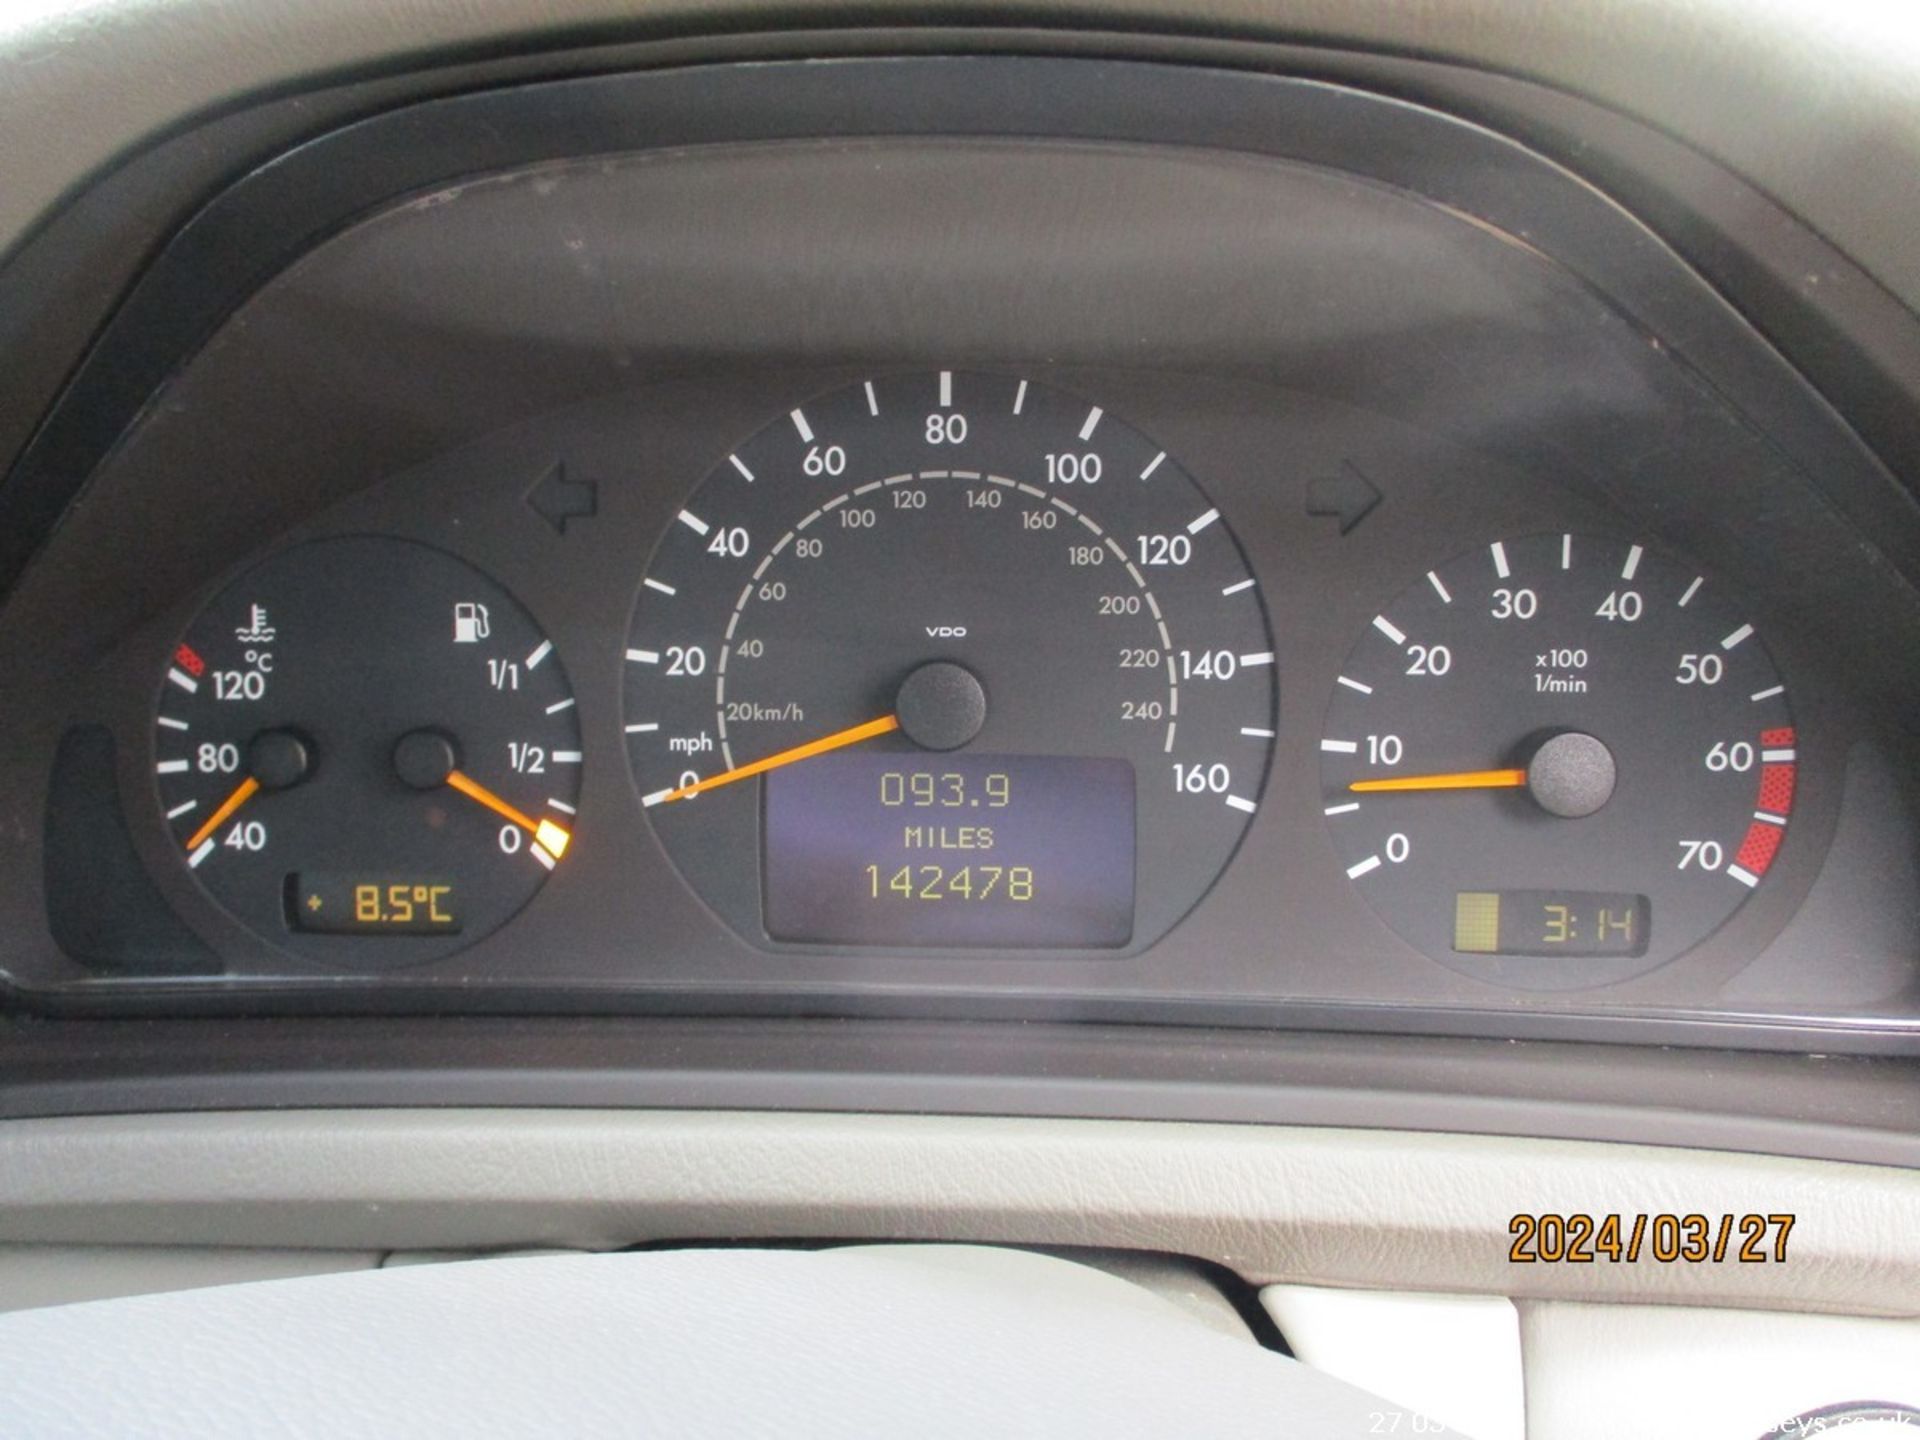 2001 MERCEDES CLK 230 - 2295cc 2dr Coupe (Black, 142k) - Image 23 of 24